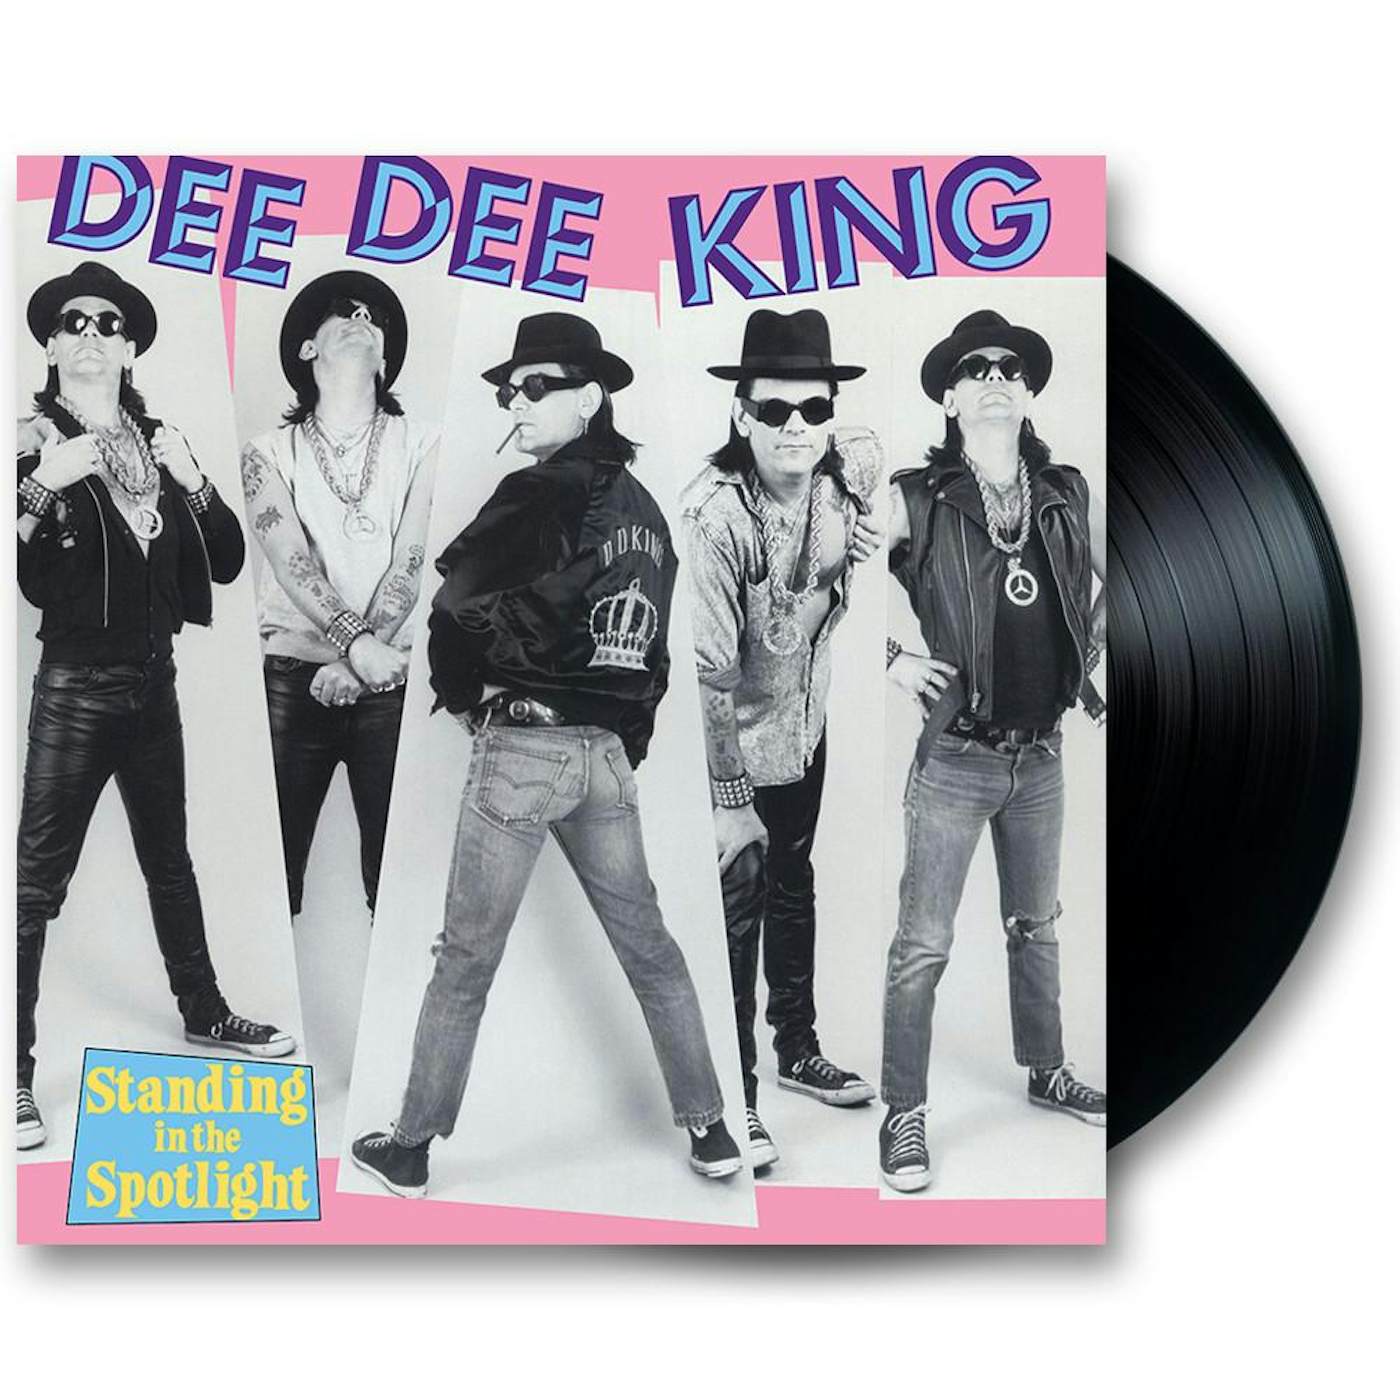 Dee Dee Ramone Dee Dee King “Standing in the Spotlight” 12” Vinyl LP (Ltd Ed Reissue)